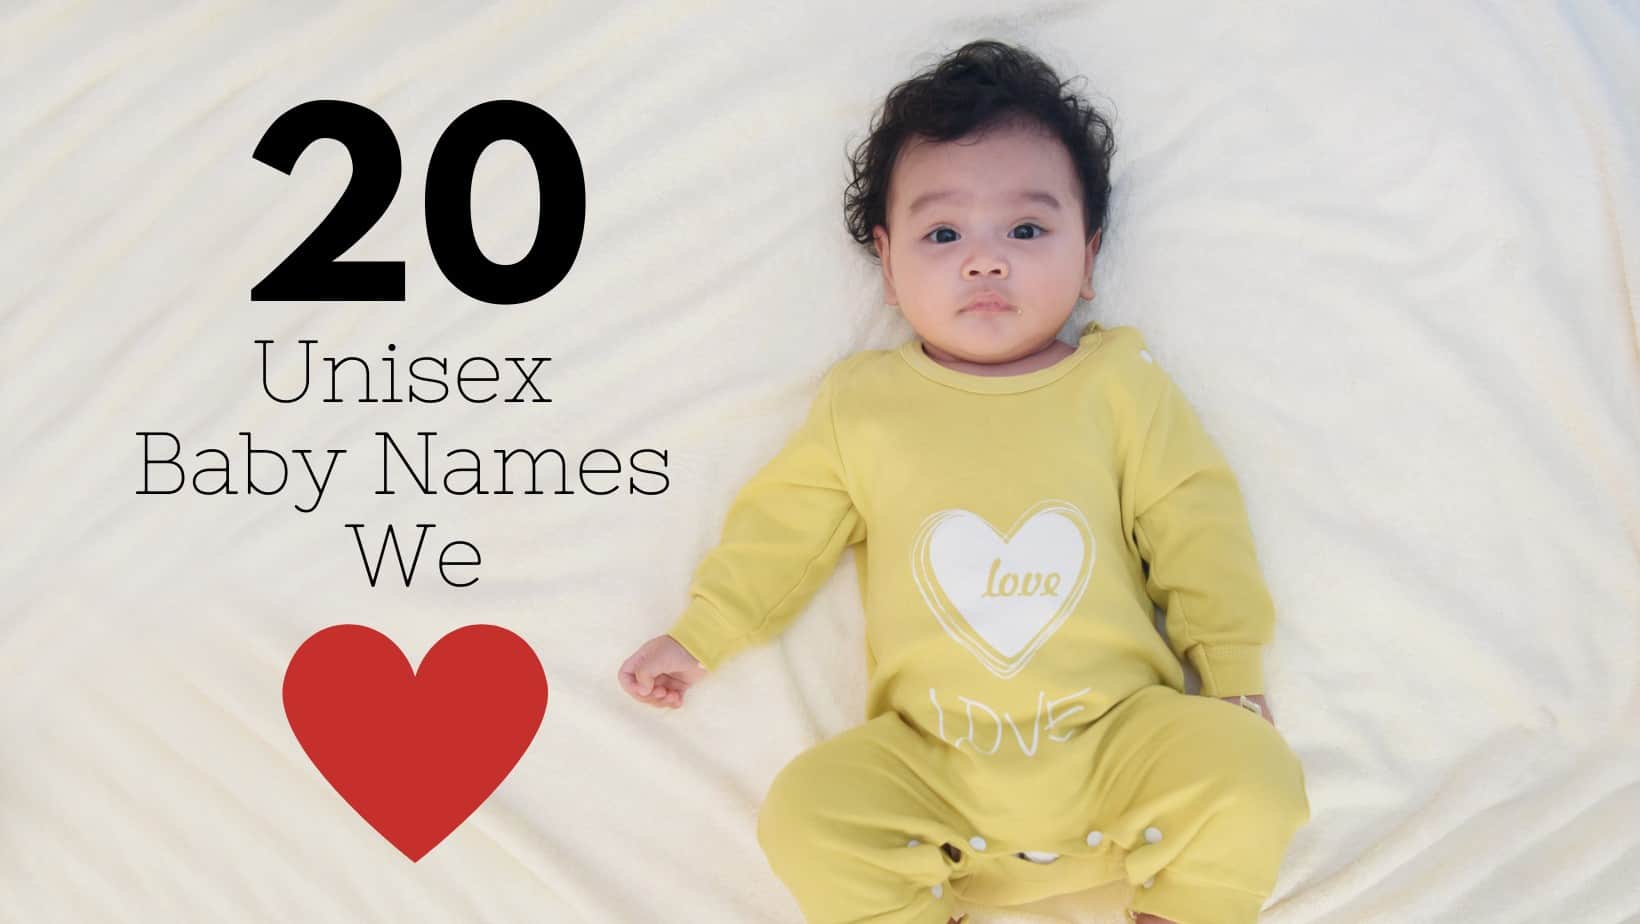 UNISEX BABY NAMES